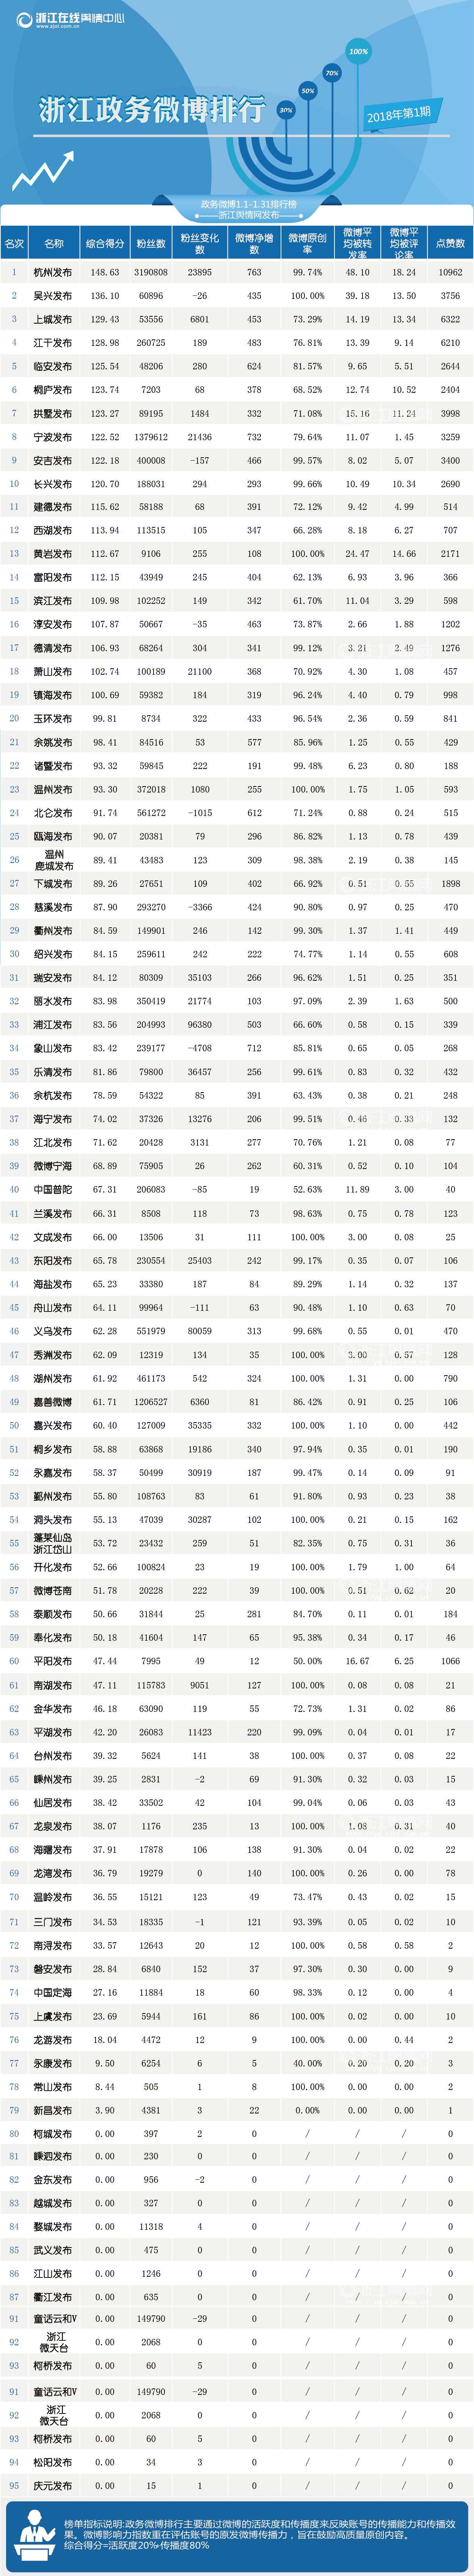 浙江政务微博排行（1月1日-1月31日）P1-总排行-01.png